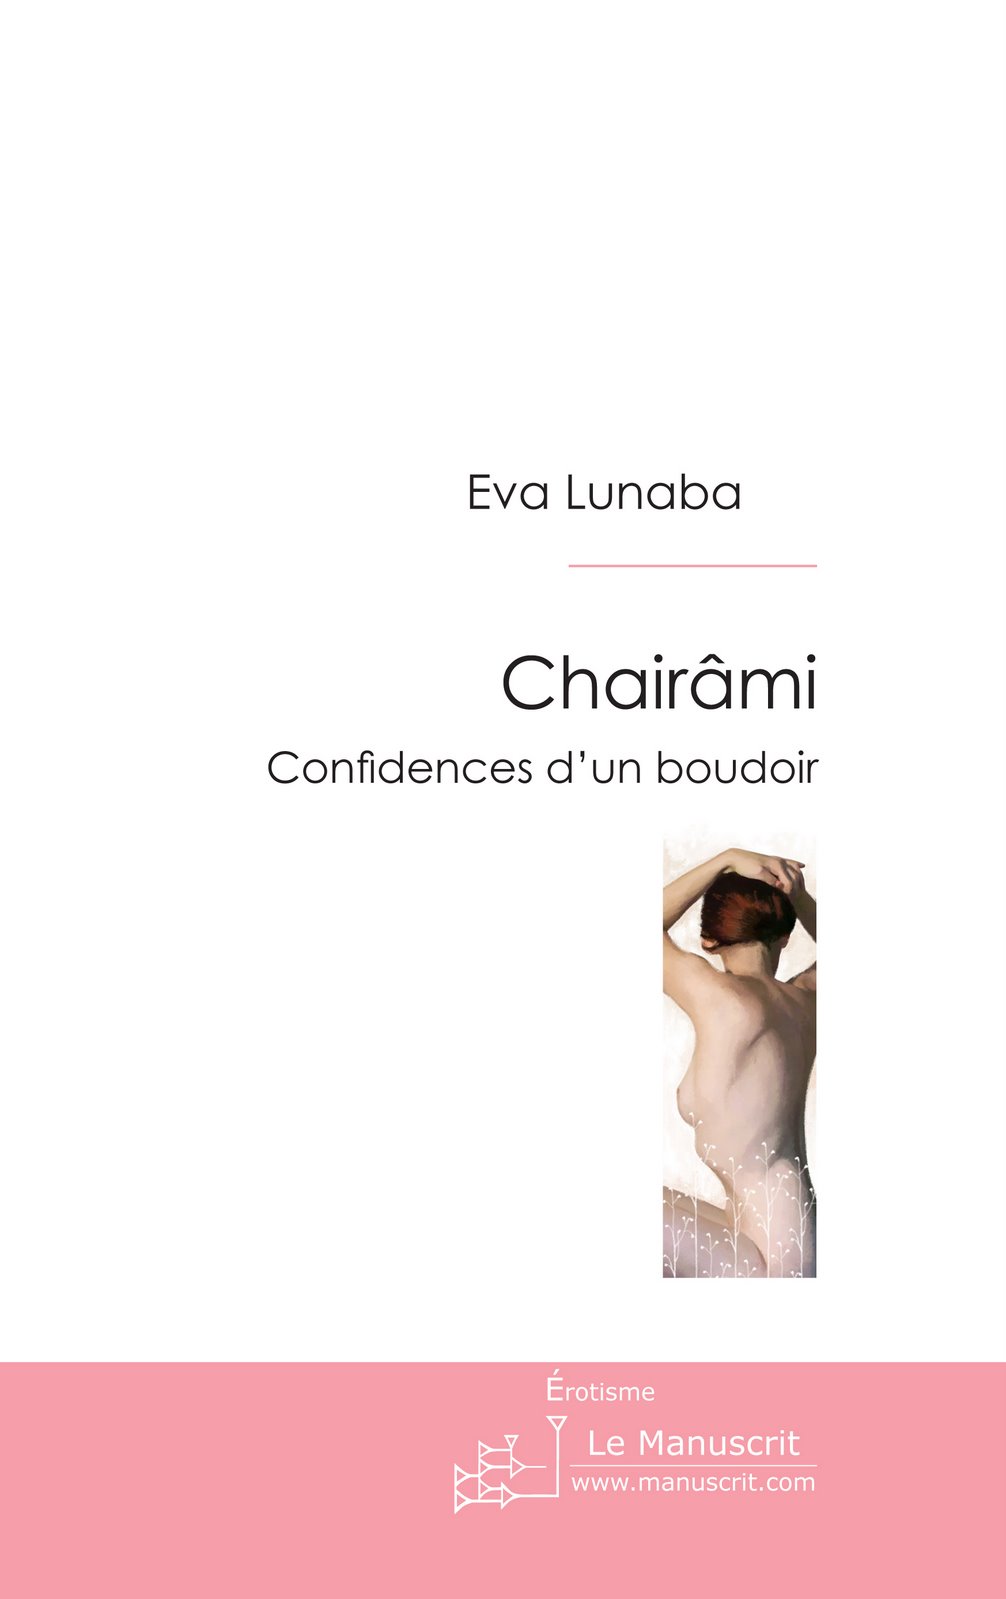 [couverture+Chairâmi+-+Eva+Lunaba+-+2007.jpg]